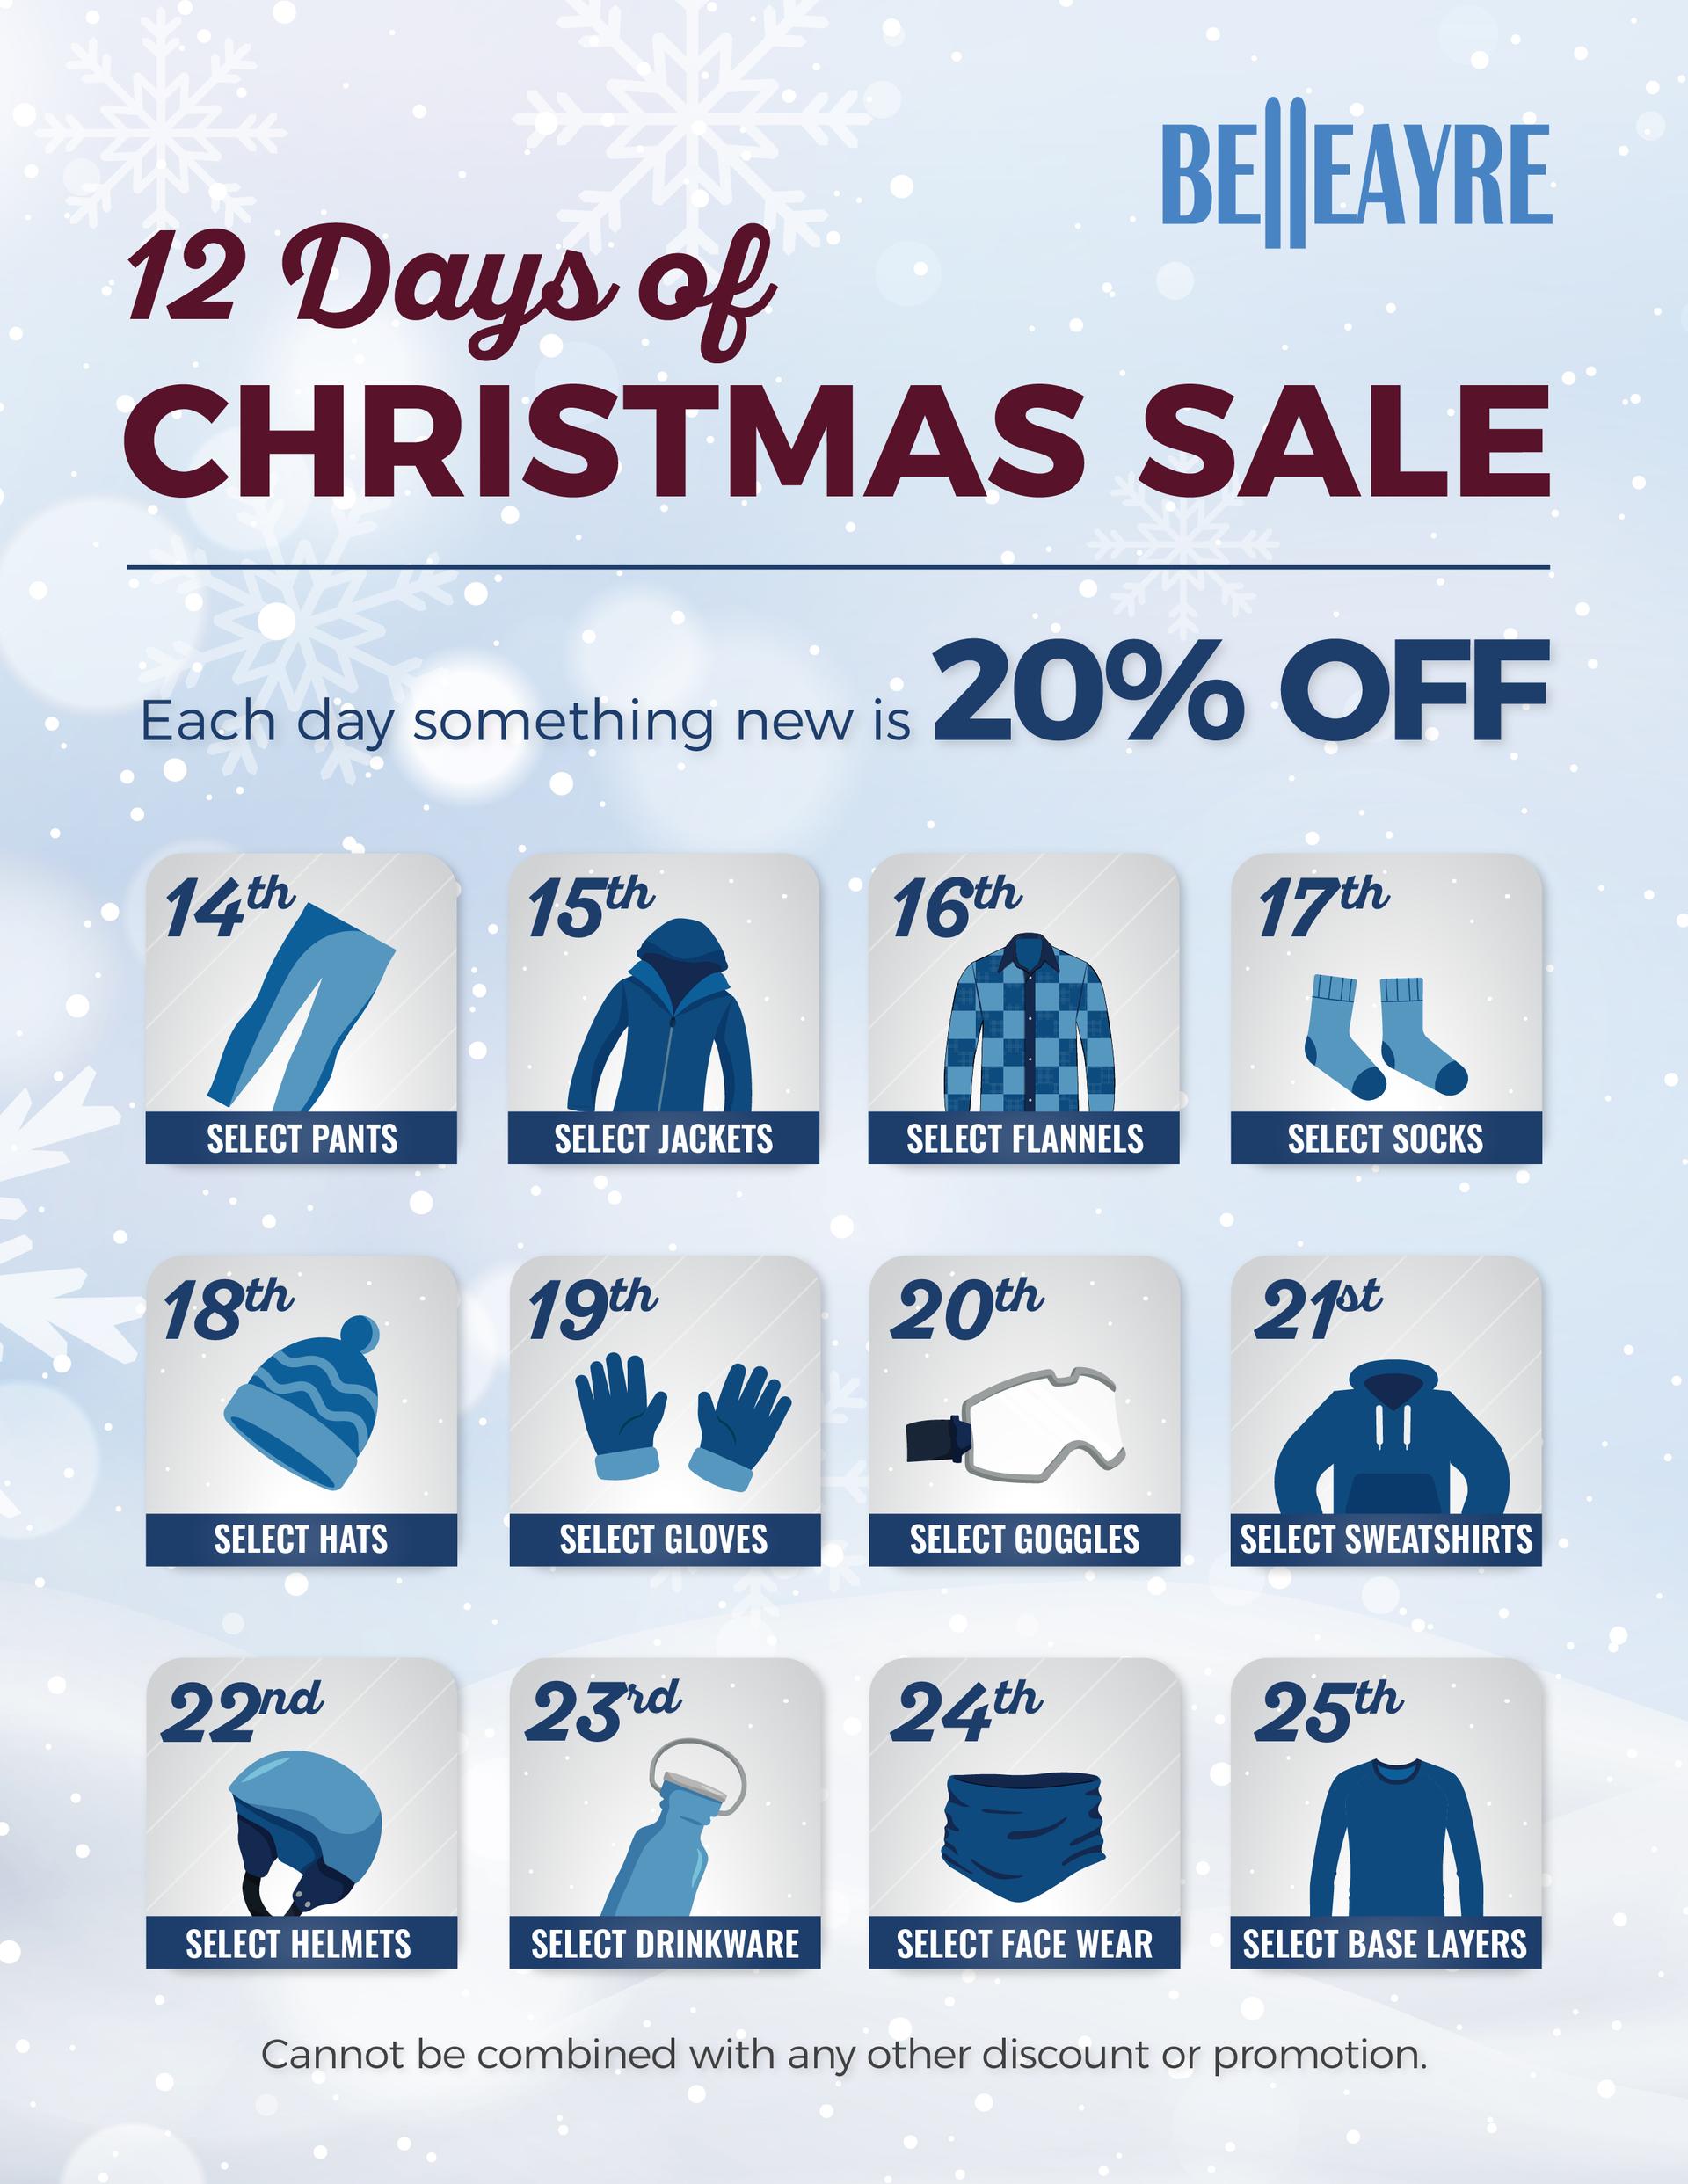 12 Days of Christmas Sale